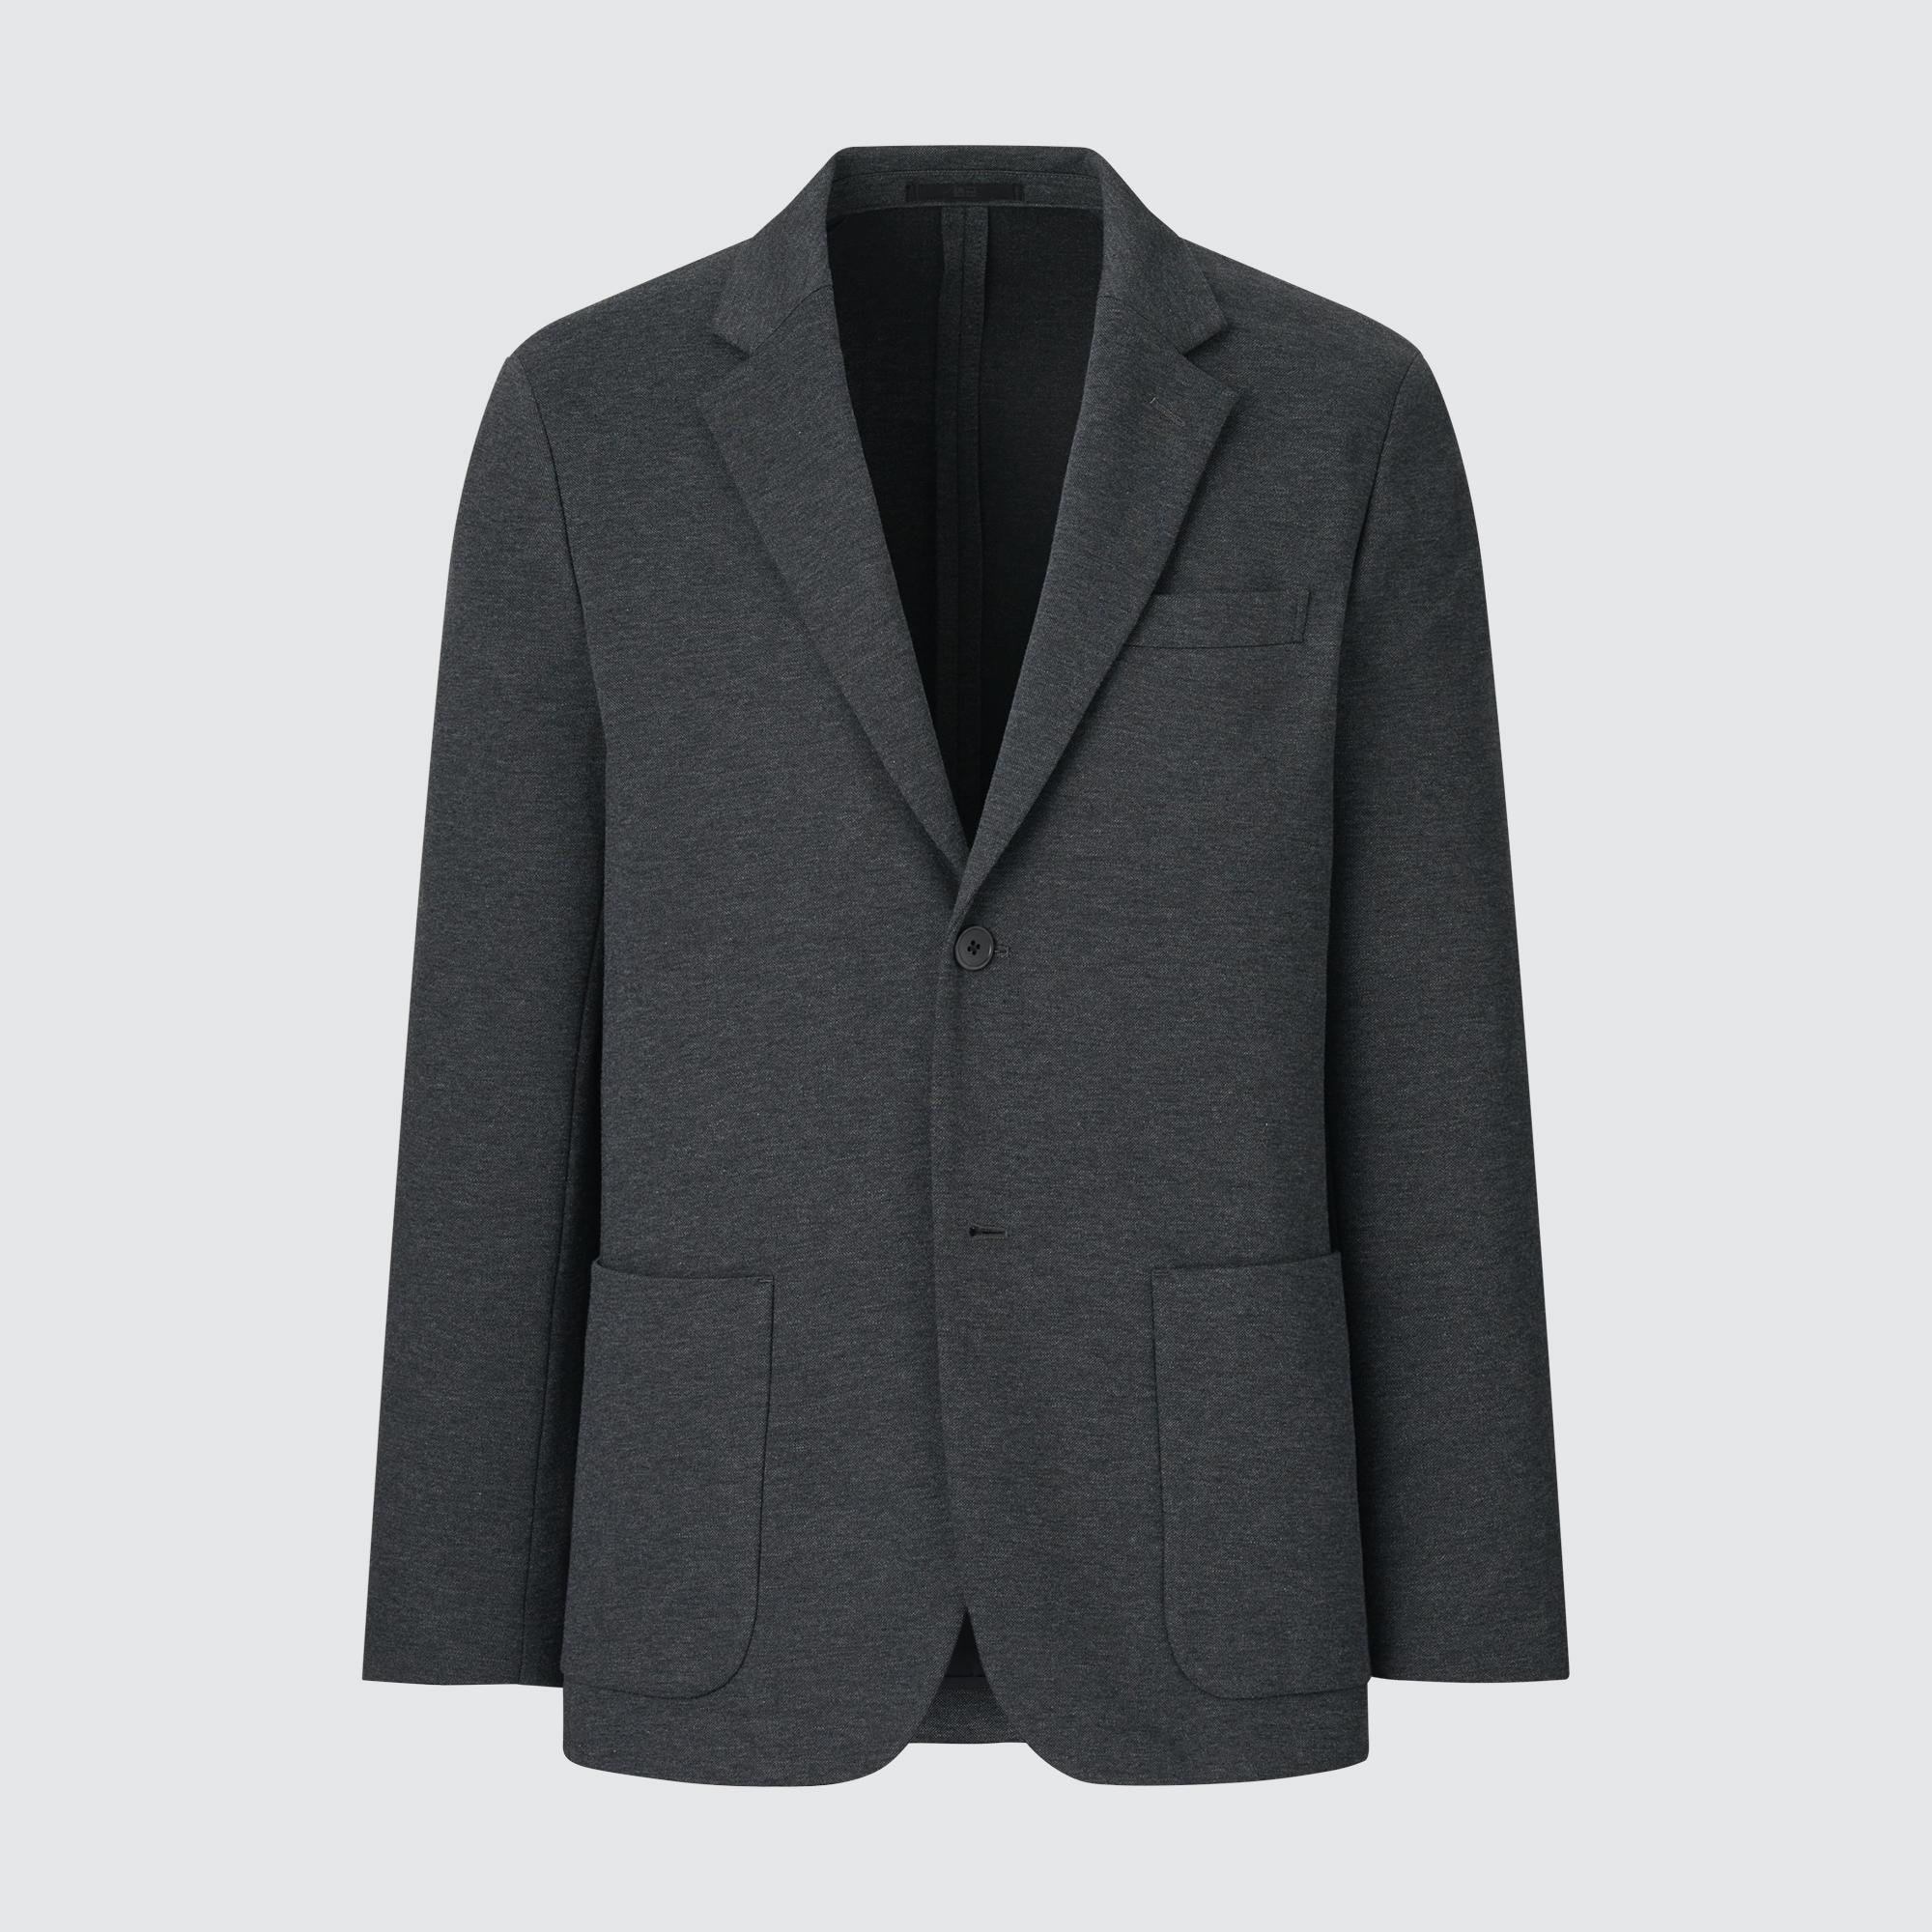 Куртка UNIQLO Comfort 2B из хлопка, темно-серый куртка uniqlo comfort 2b на пуговицах темно серый